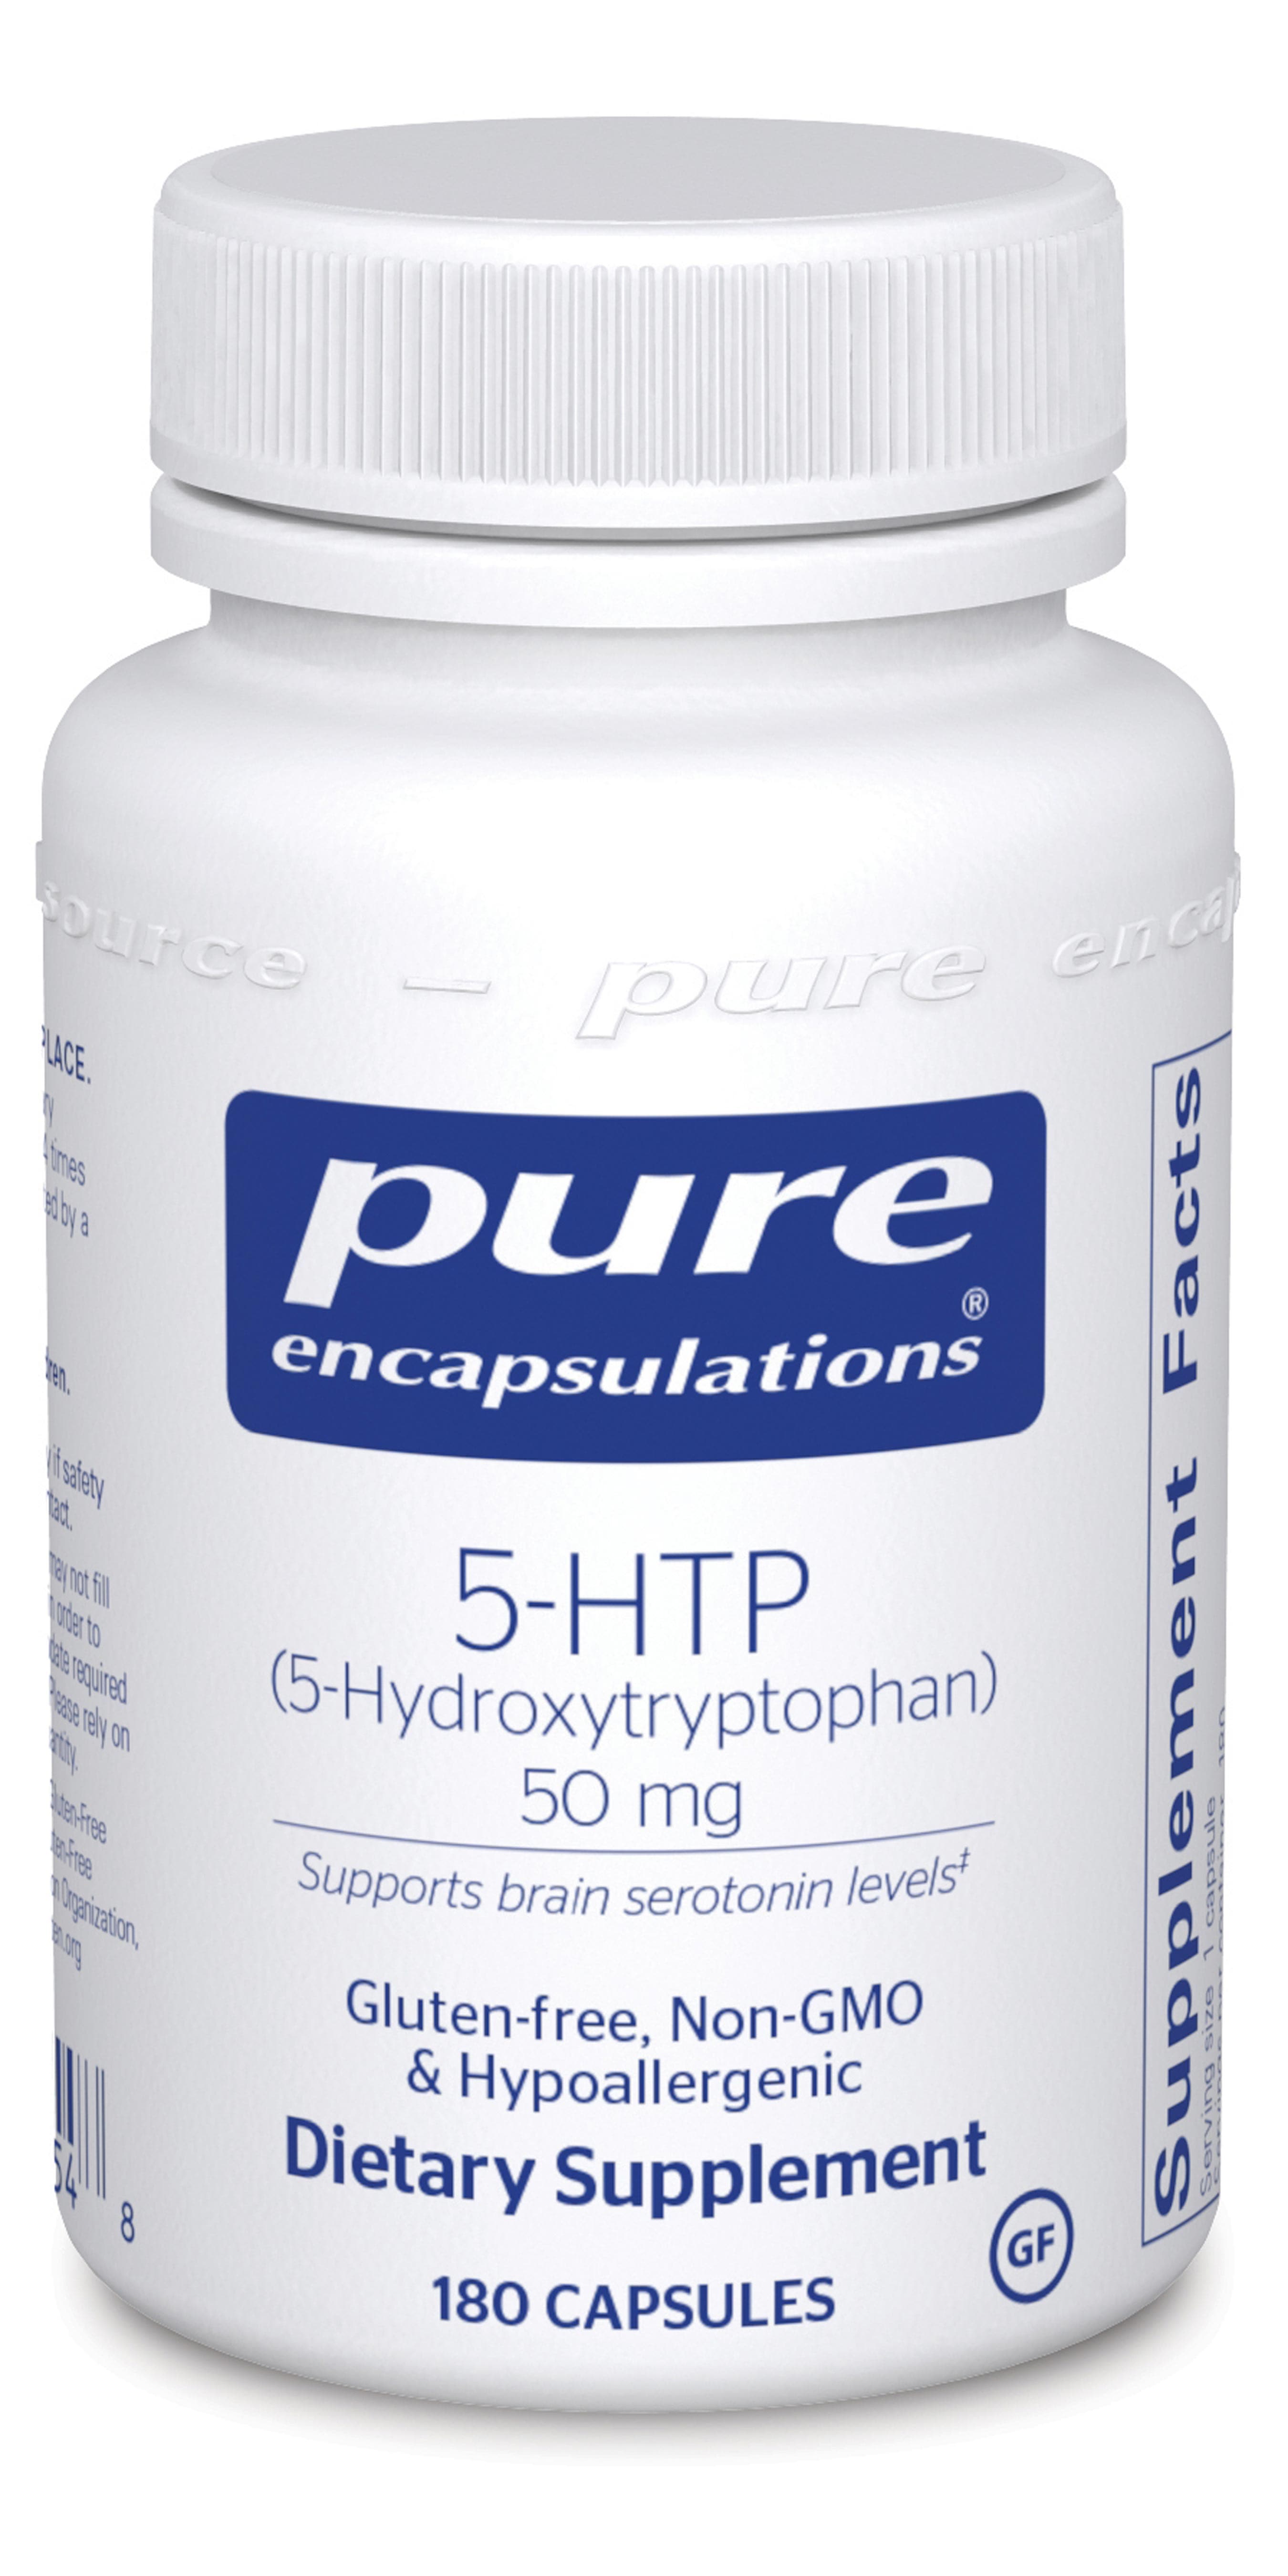 Pure Encapsulations 5-HTP 50mg 50mg